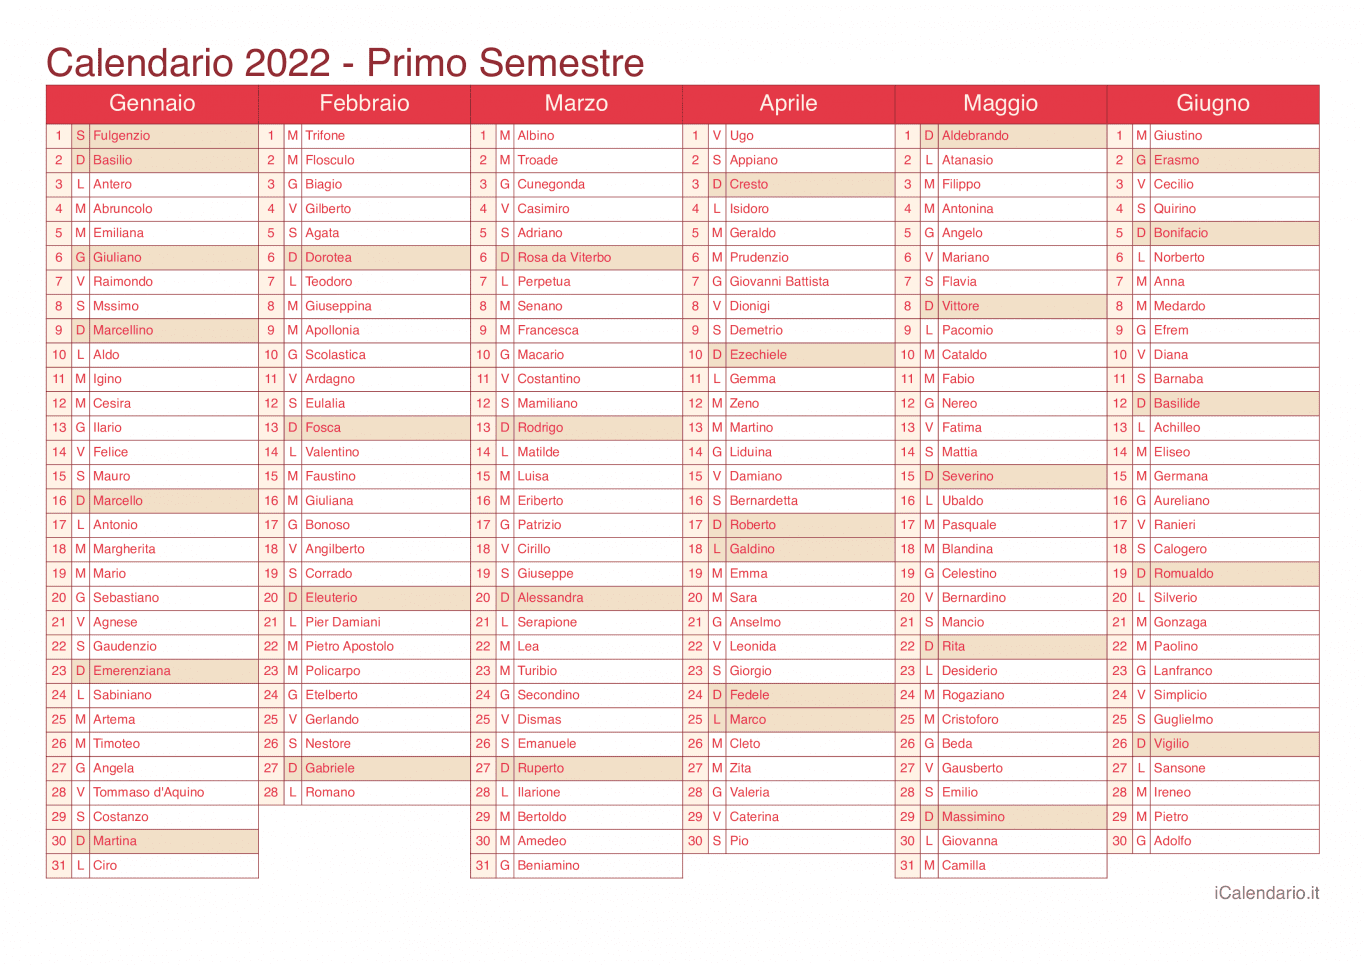 Calendario semestrale 2022 con santi e festivi - Cherry